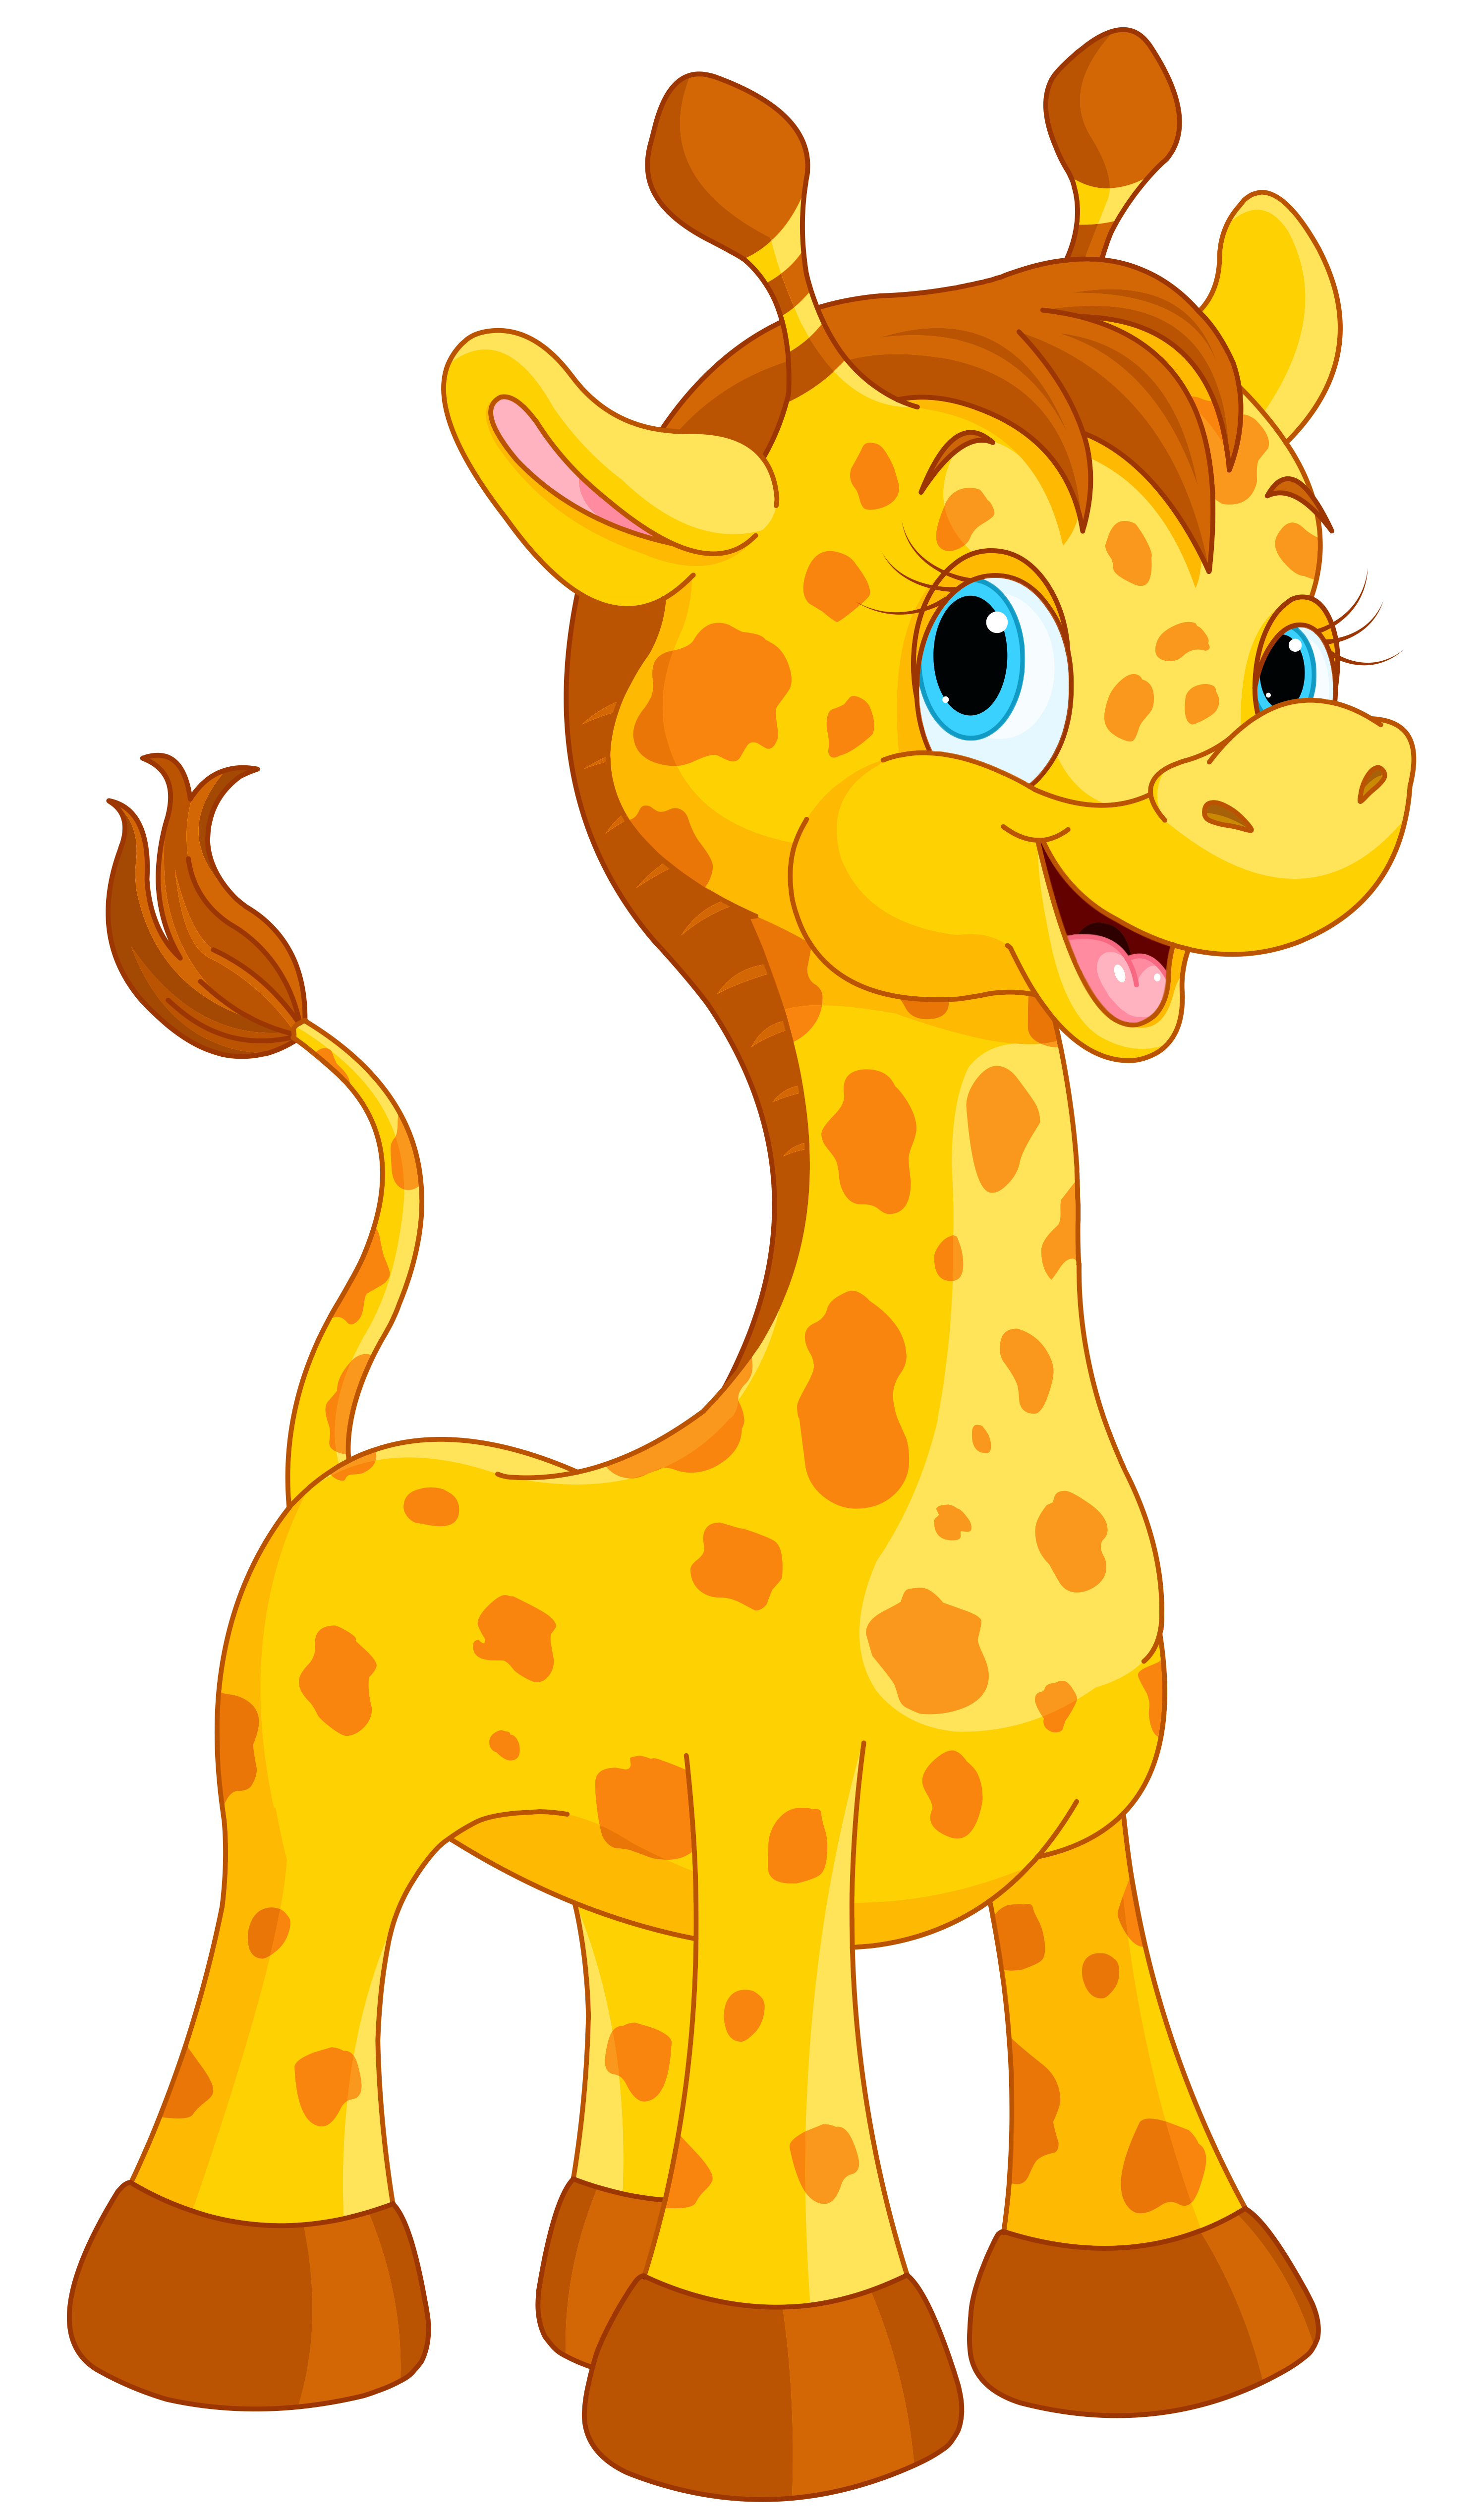 Giraffe cartoon png image. Phone clipart cute